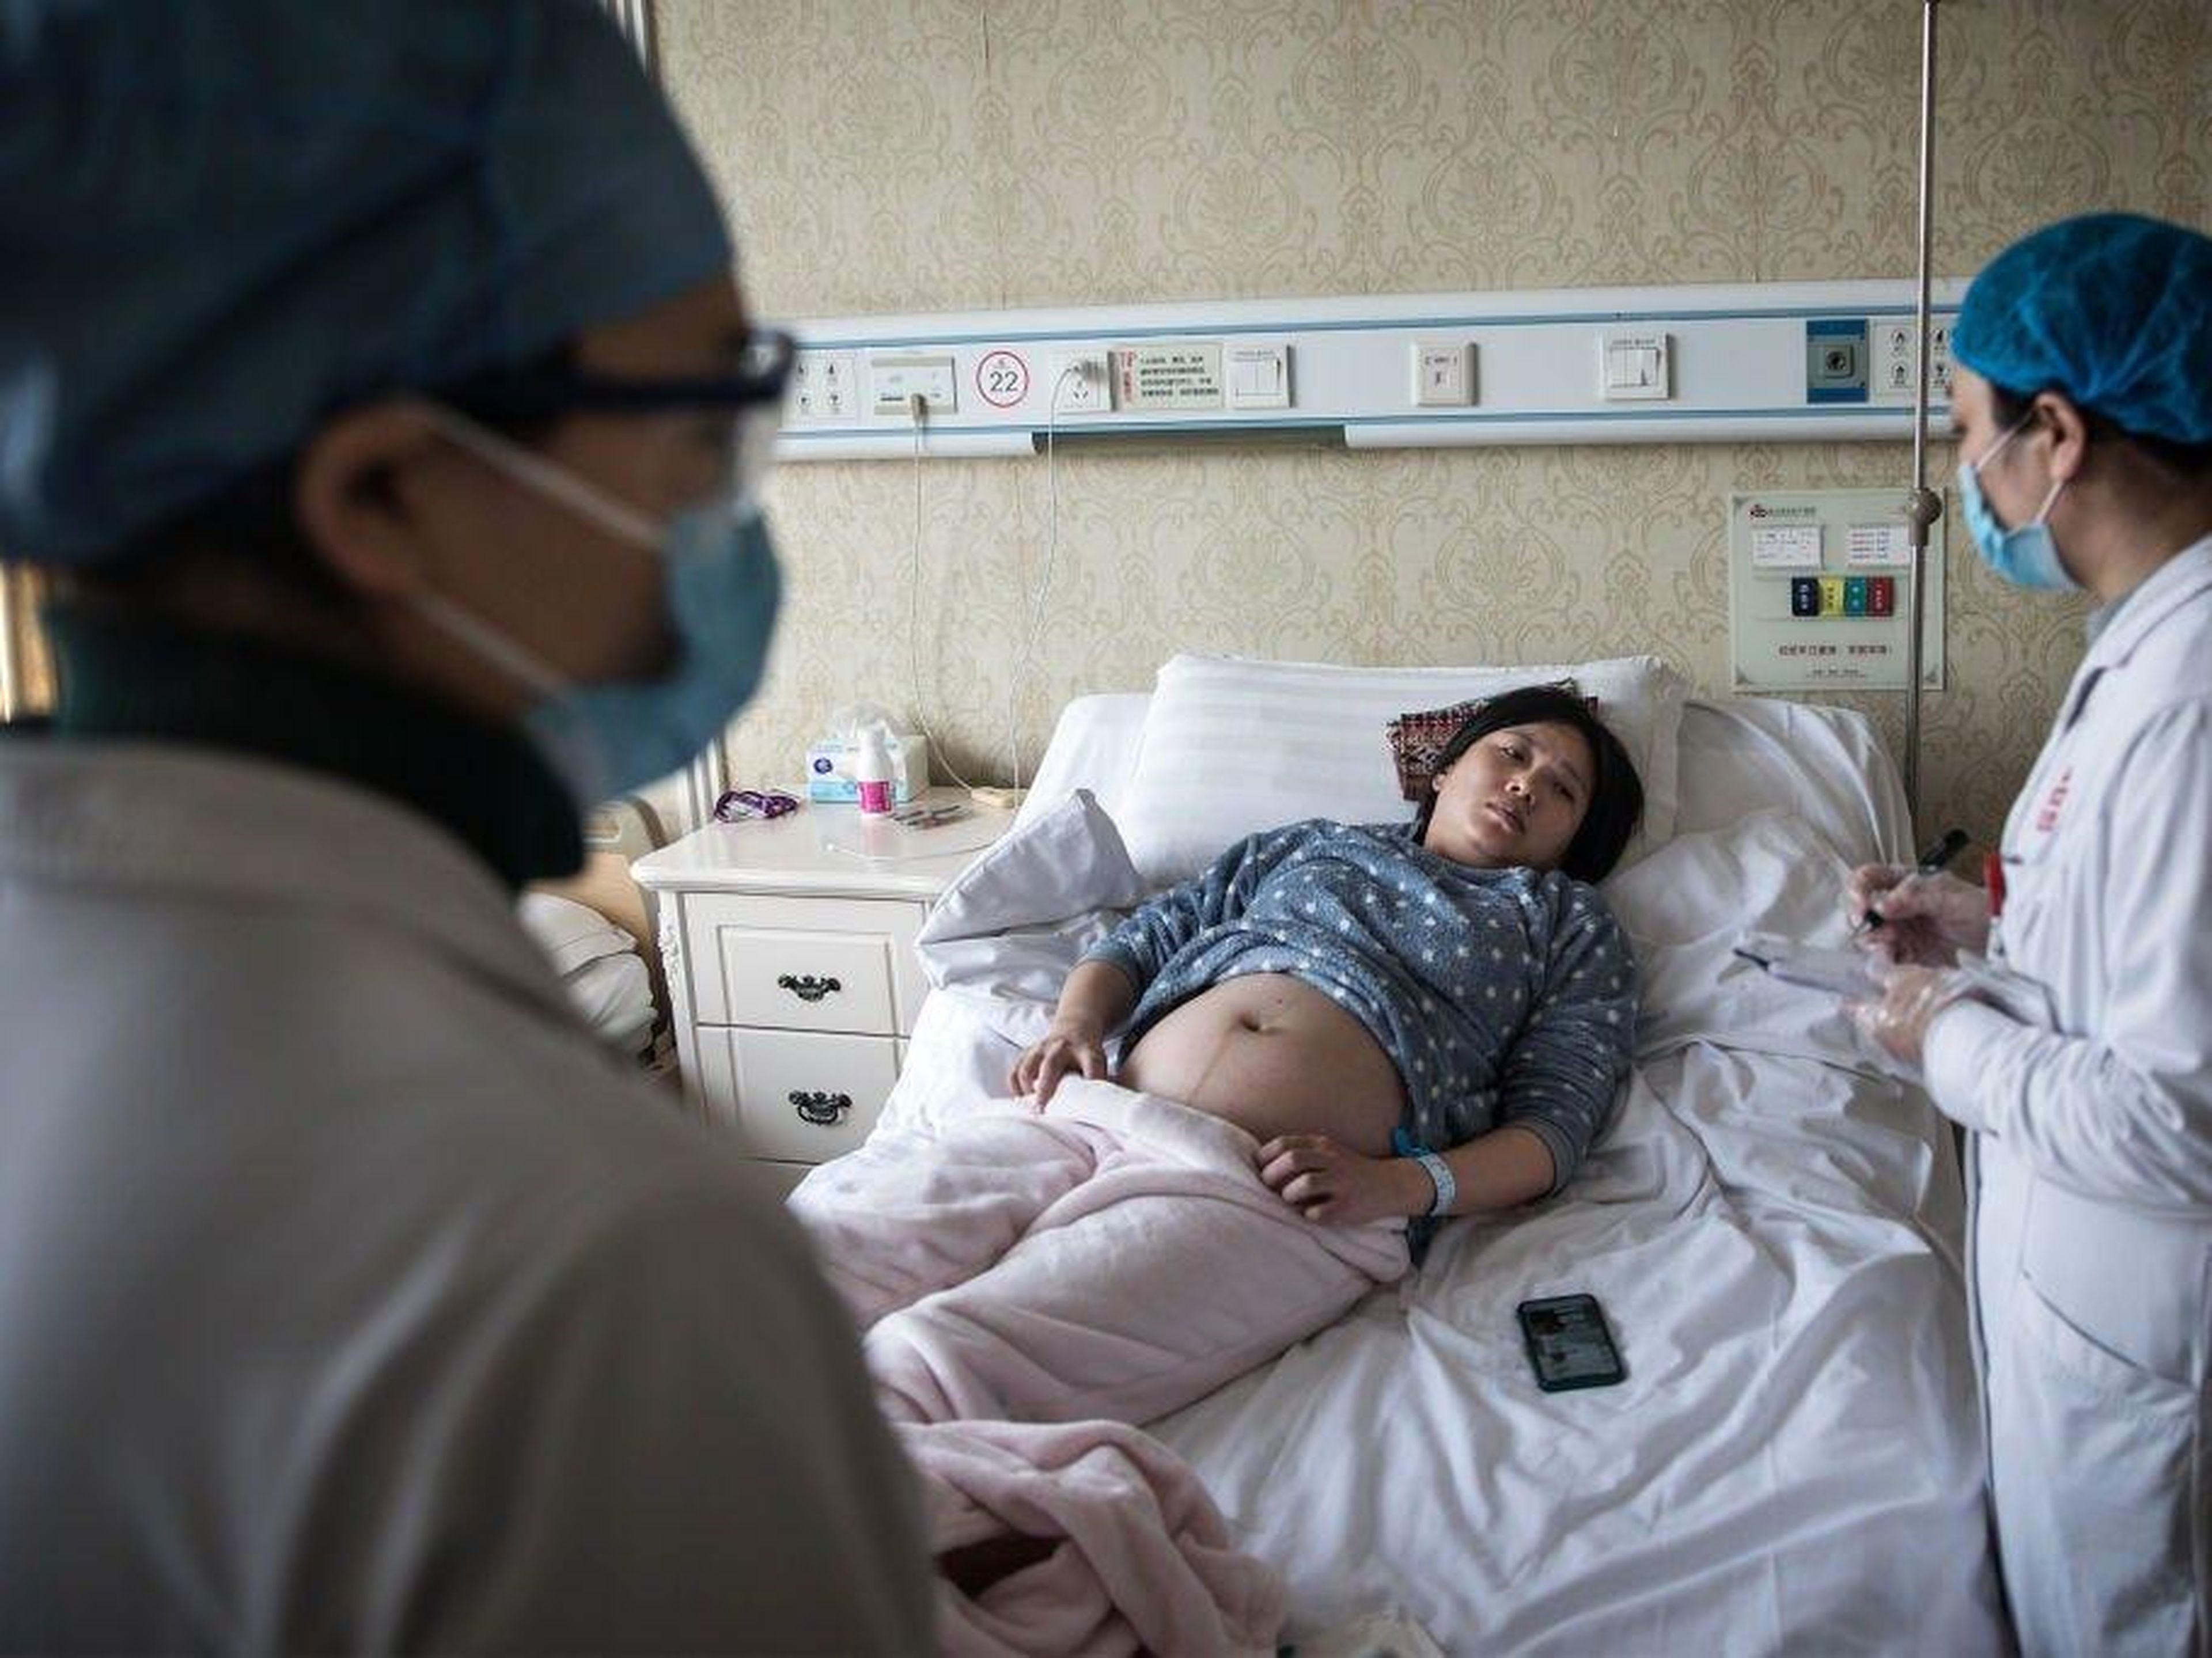 Un médico examina a una mujer embarazada en un hospital obstétrico privado el 19 de febrero de 2020 en Wuhan, Hubei, China.